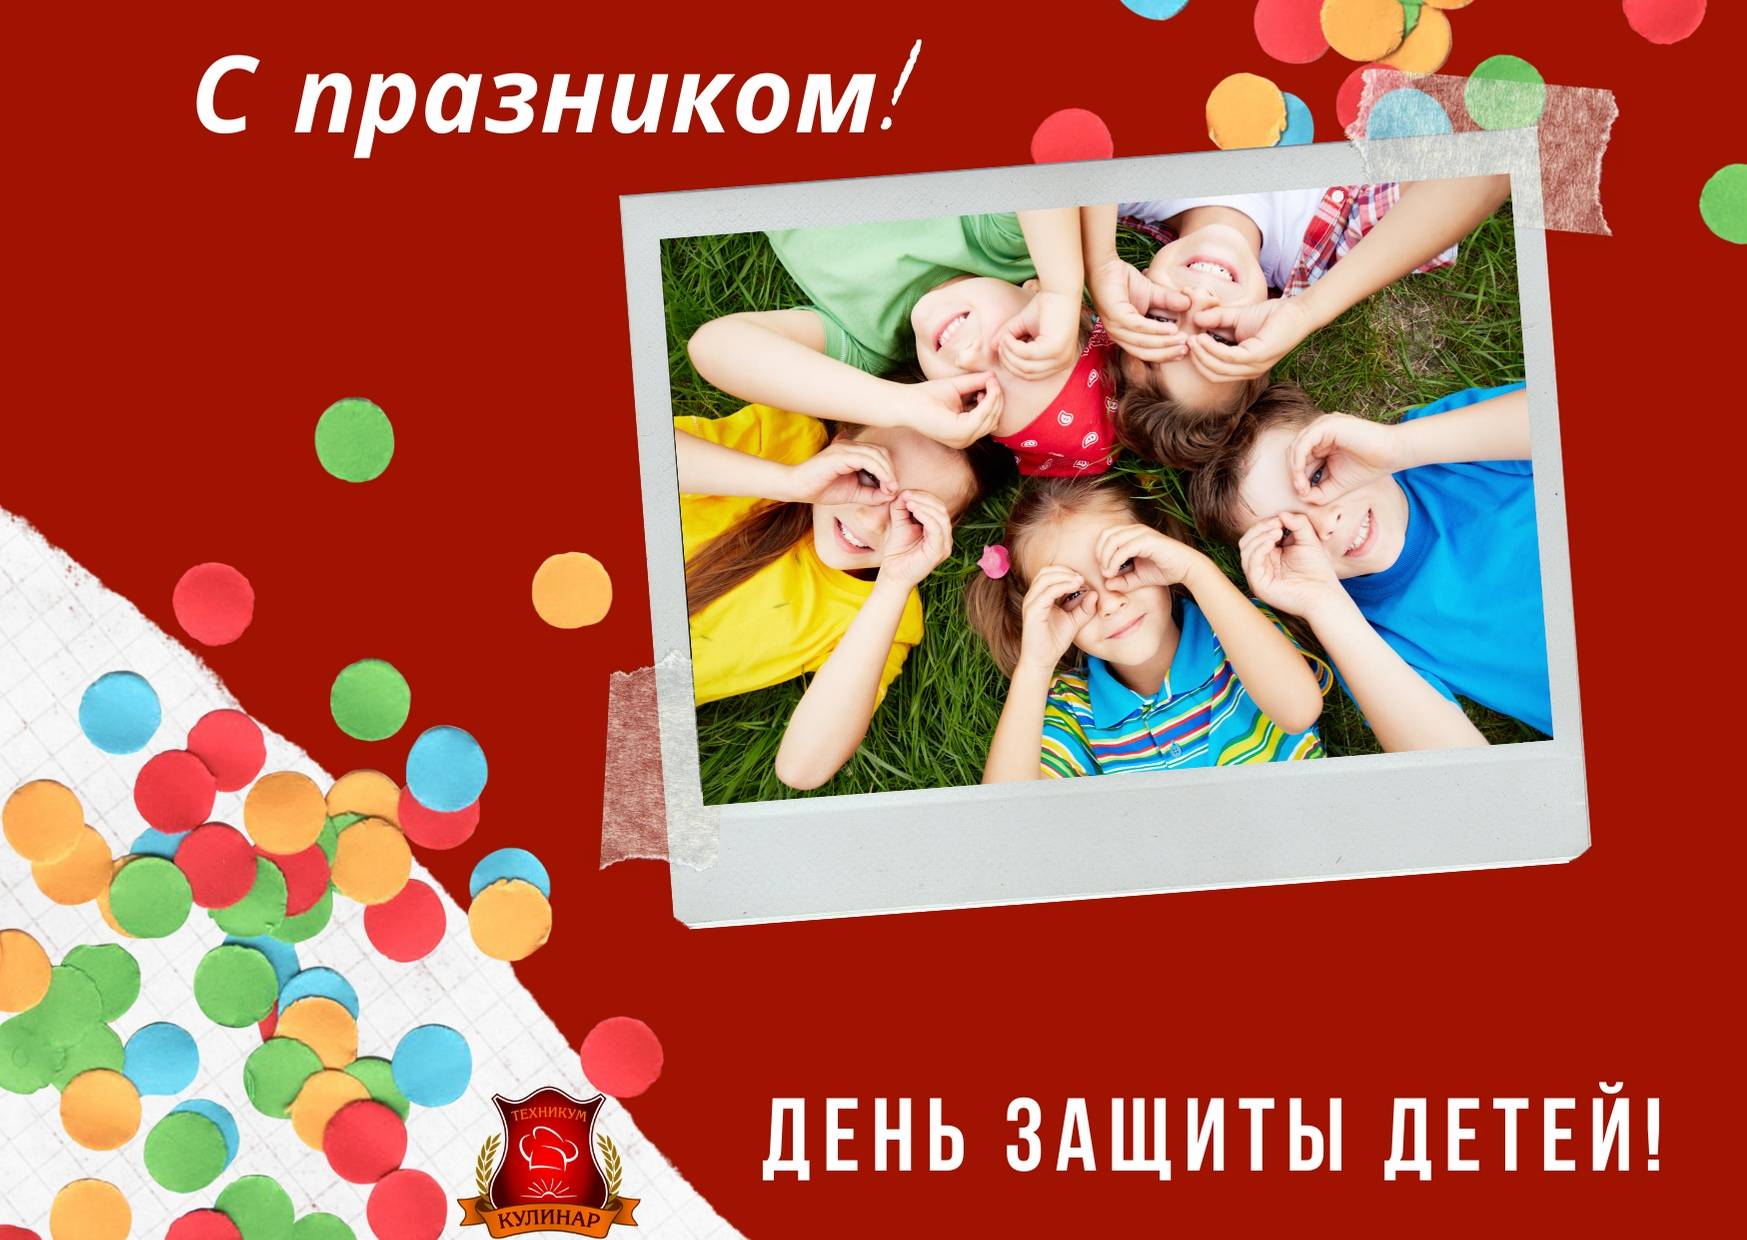 Международный день защиты детей ???? красивые картинки и открытки, история и традиции праздника, интересные факты